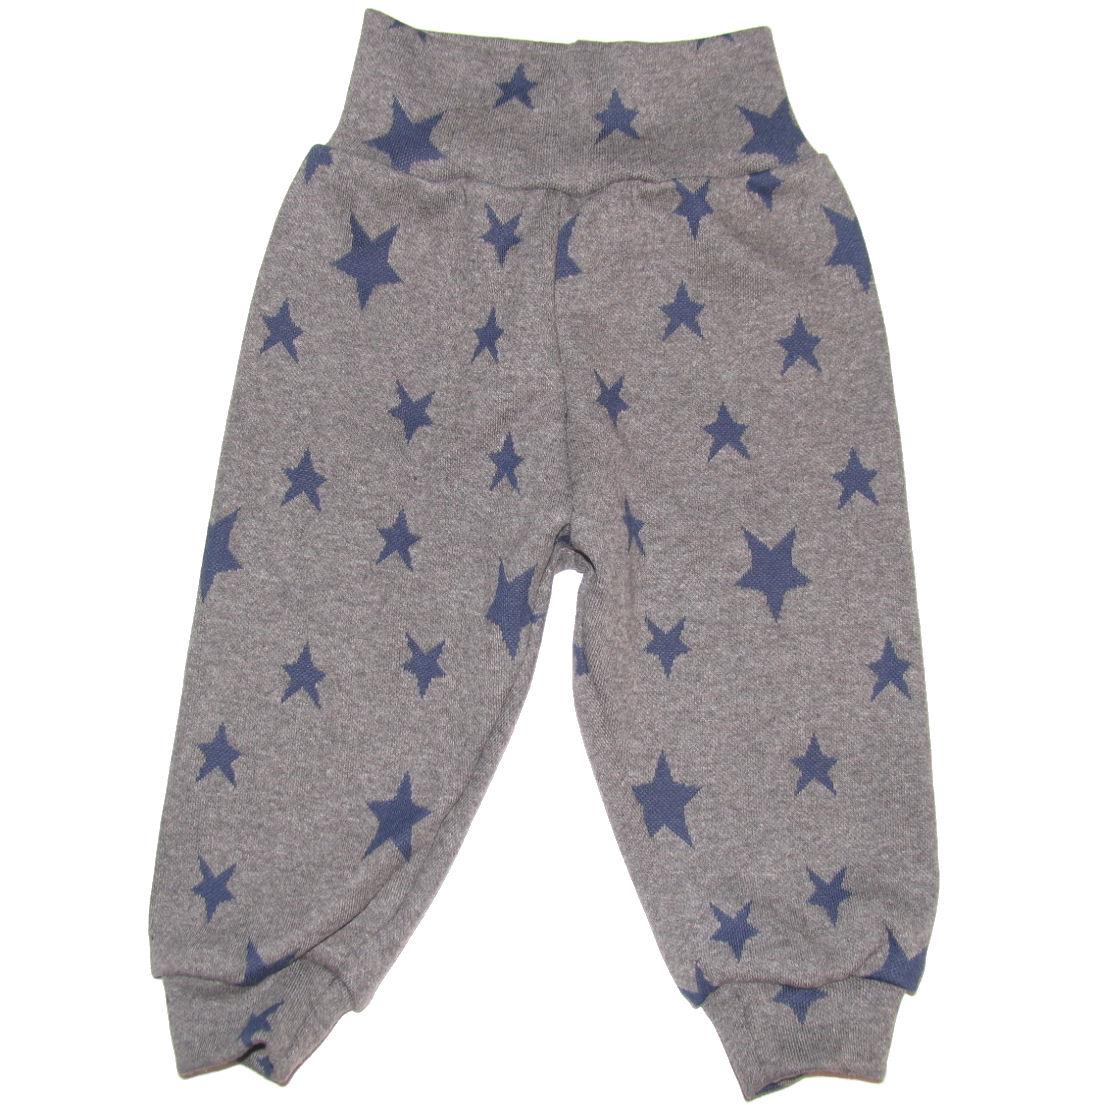 LT-desing bukser uld grå med blå stjerner str.